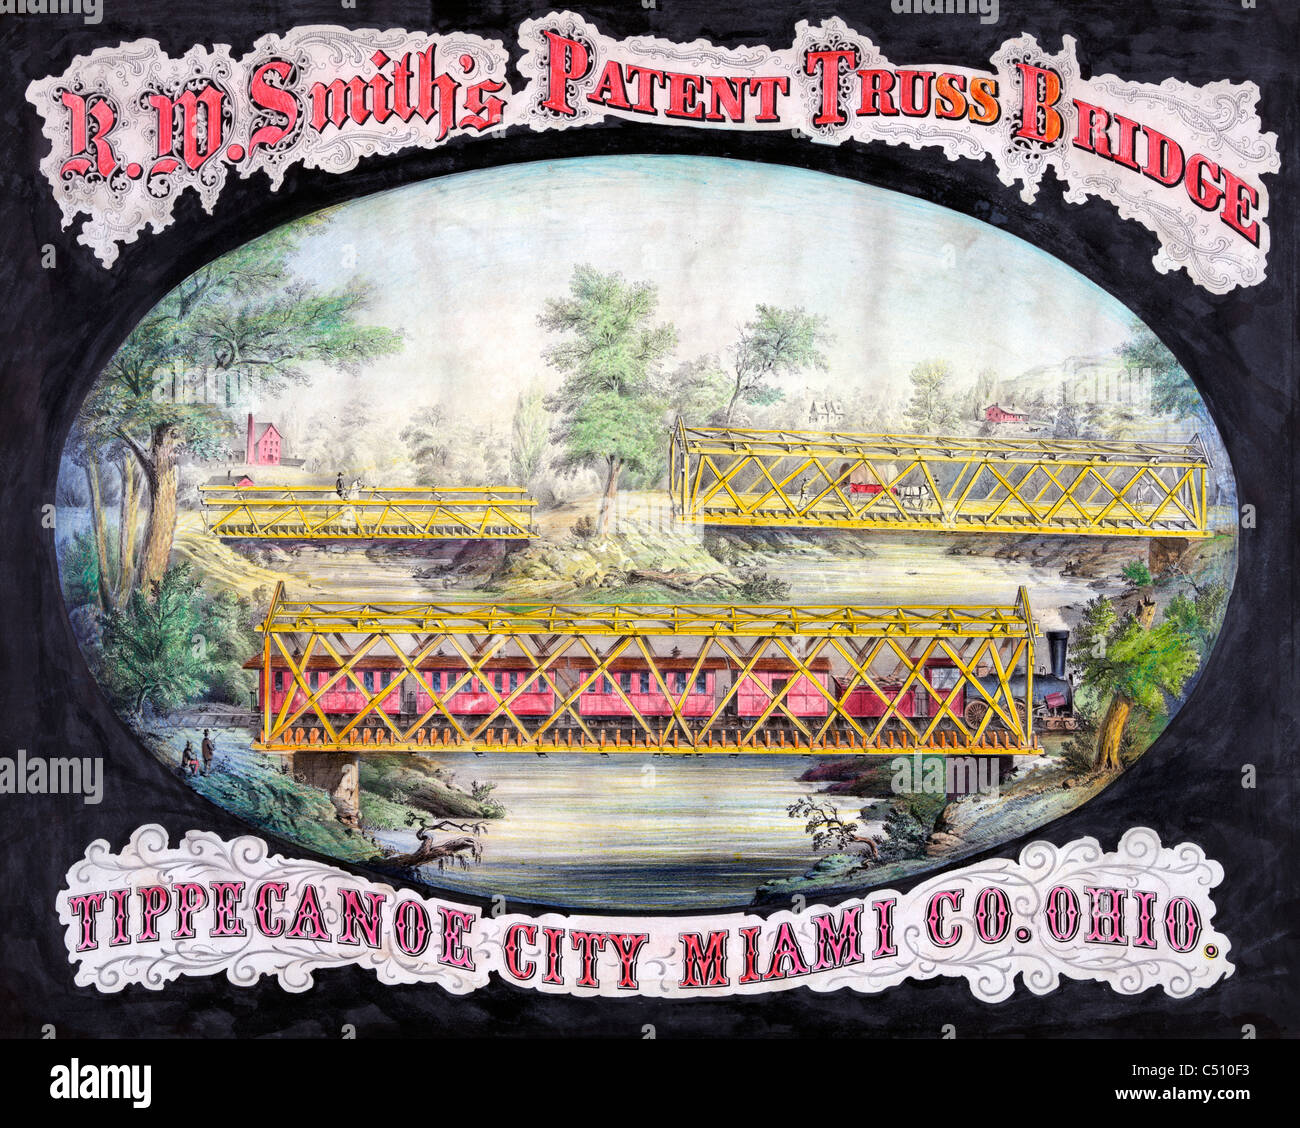 R.W. Smith's patent Truss Bridge, Ville, Miami Comté de Tippecanoe, Ohio, USA vers 1868 Banque D'Images